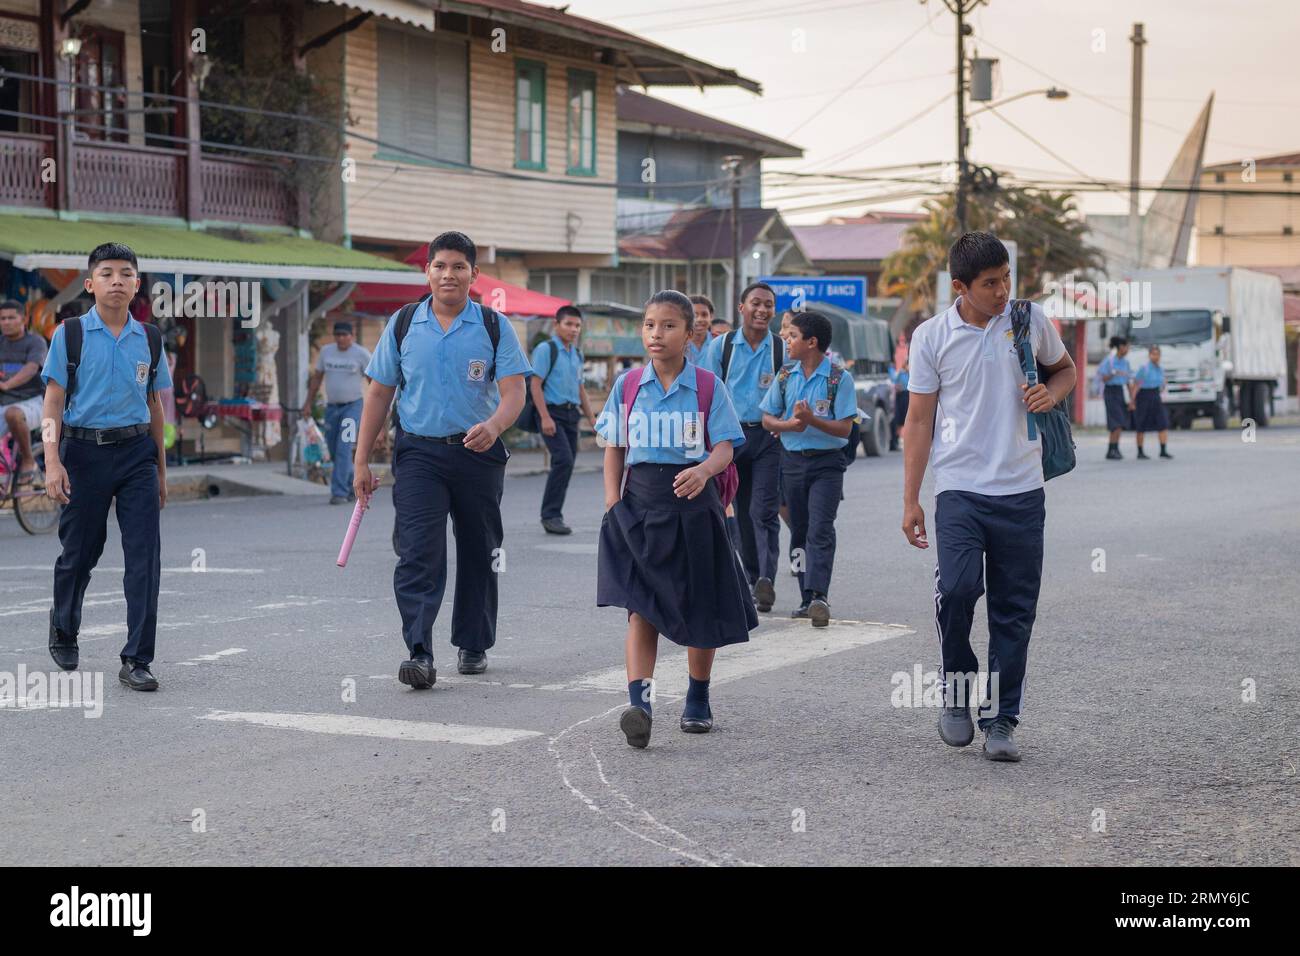 Bocas del Toro, Panama, 4,5.2023: I ragazzi delle scuole tornano a casa dalla scuola sulla strada principale, indossando le uniformi scolastiche. Scuola finita per il panamense Foto Stock